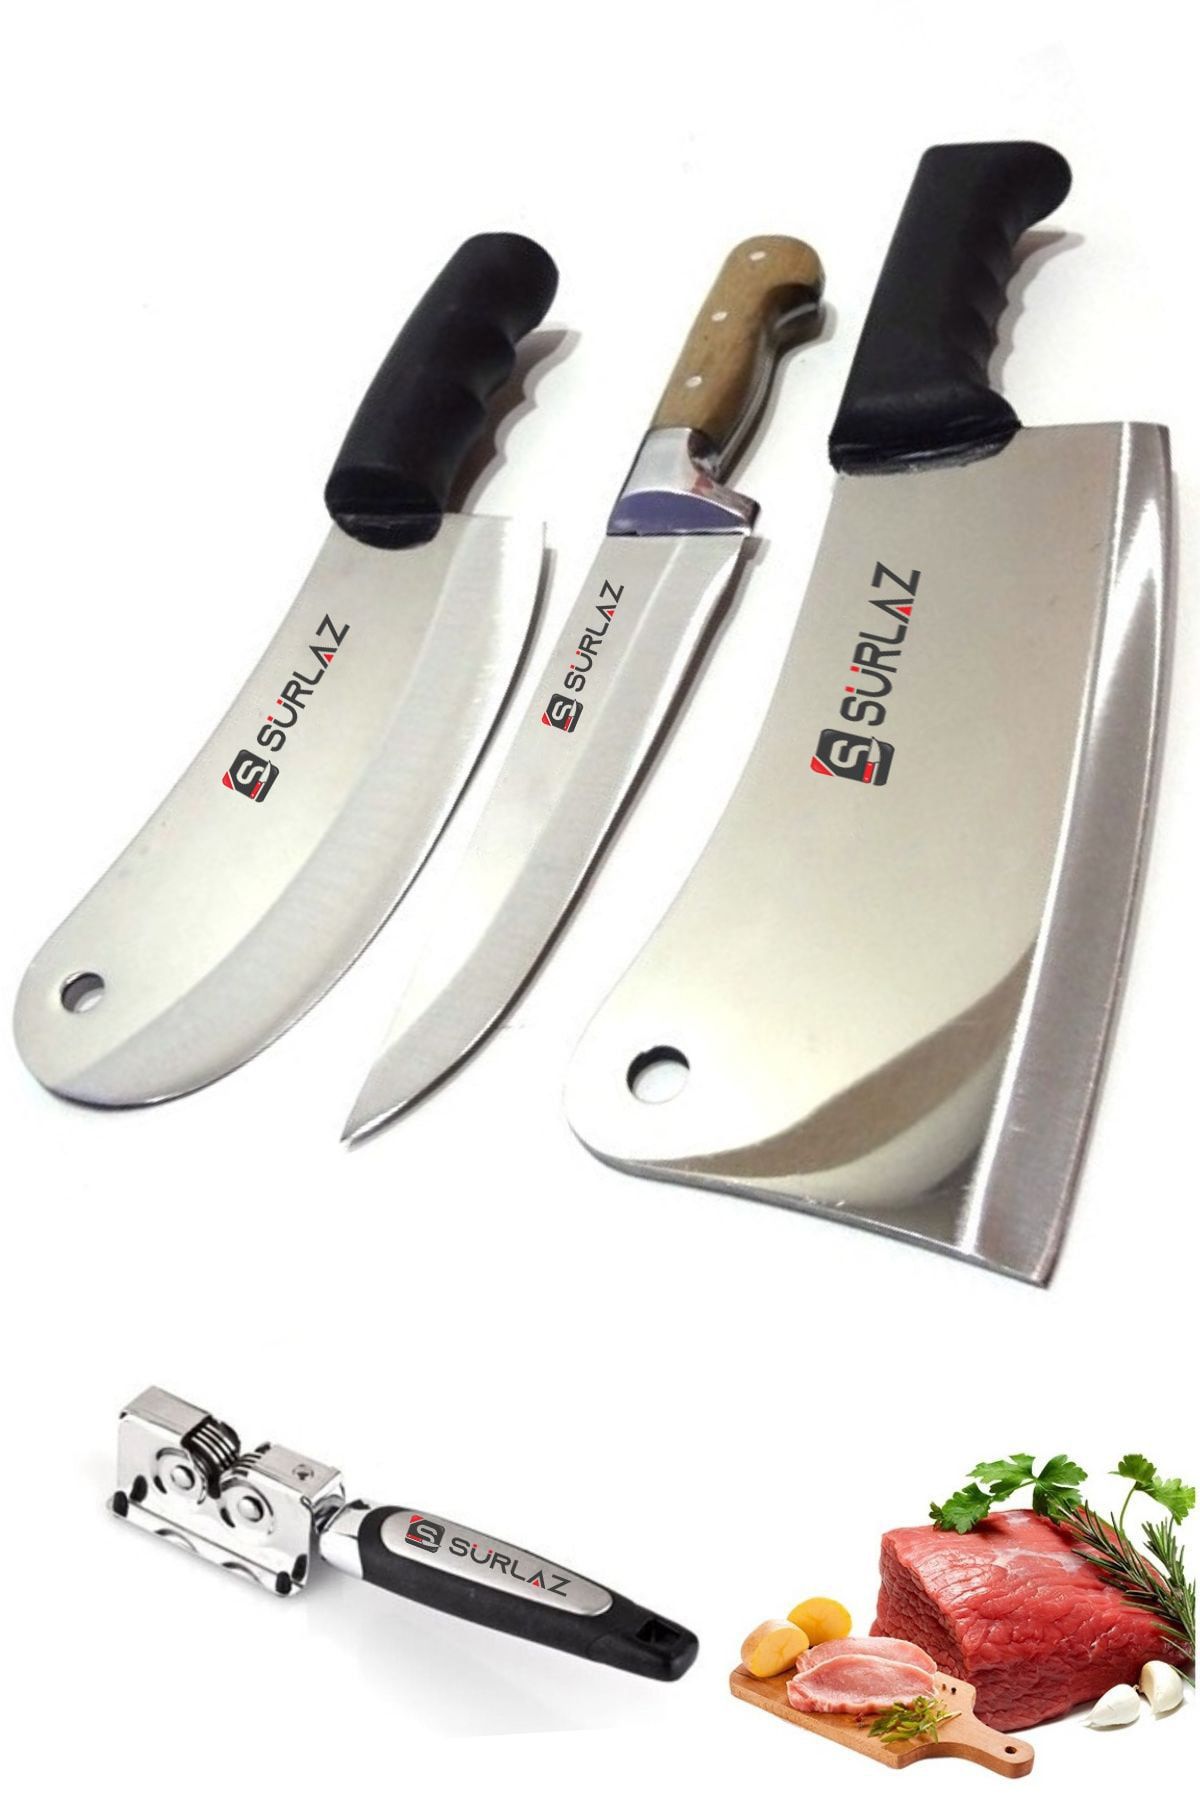 SürLaz Satır Zırh Sürmene 3'lü Set Mutfak Bıçakları